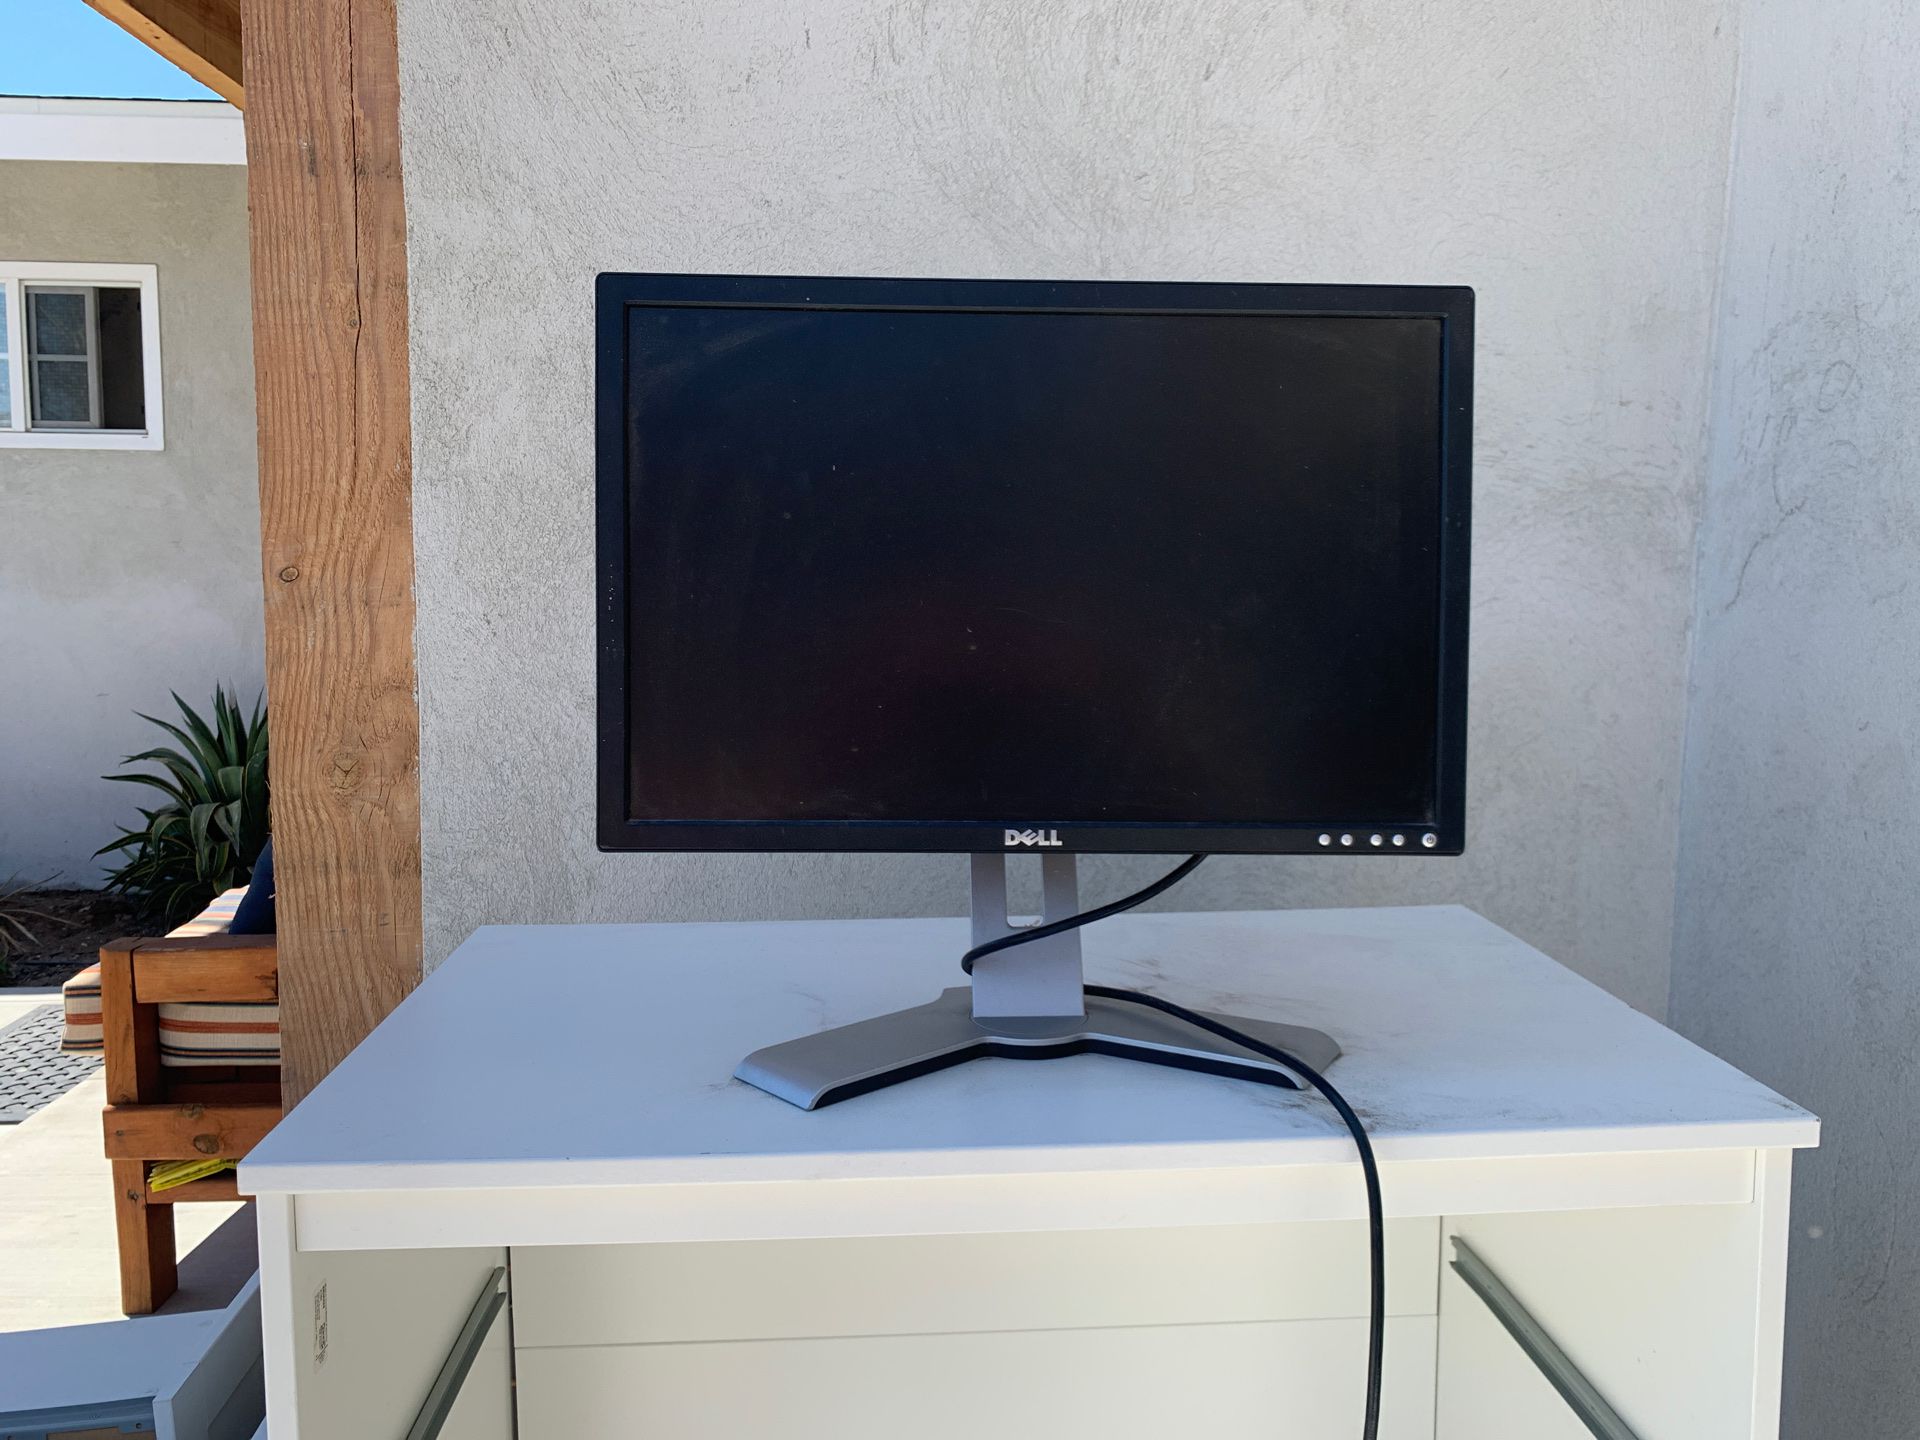 Dell 17” Computer Desktop